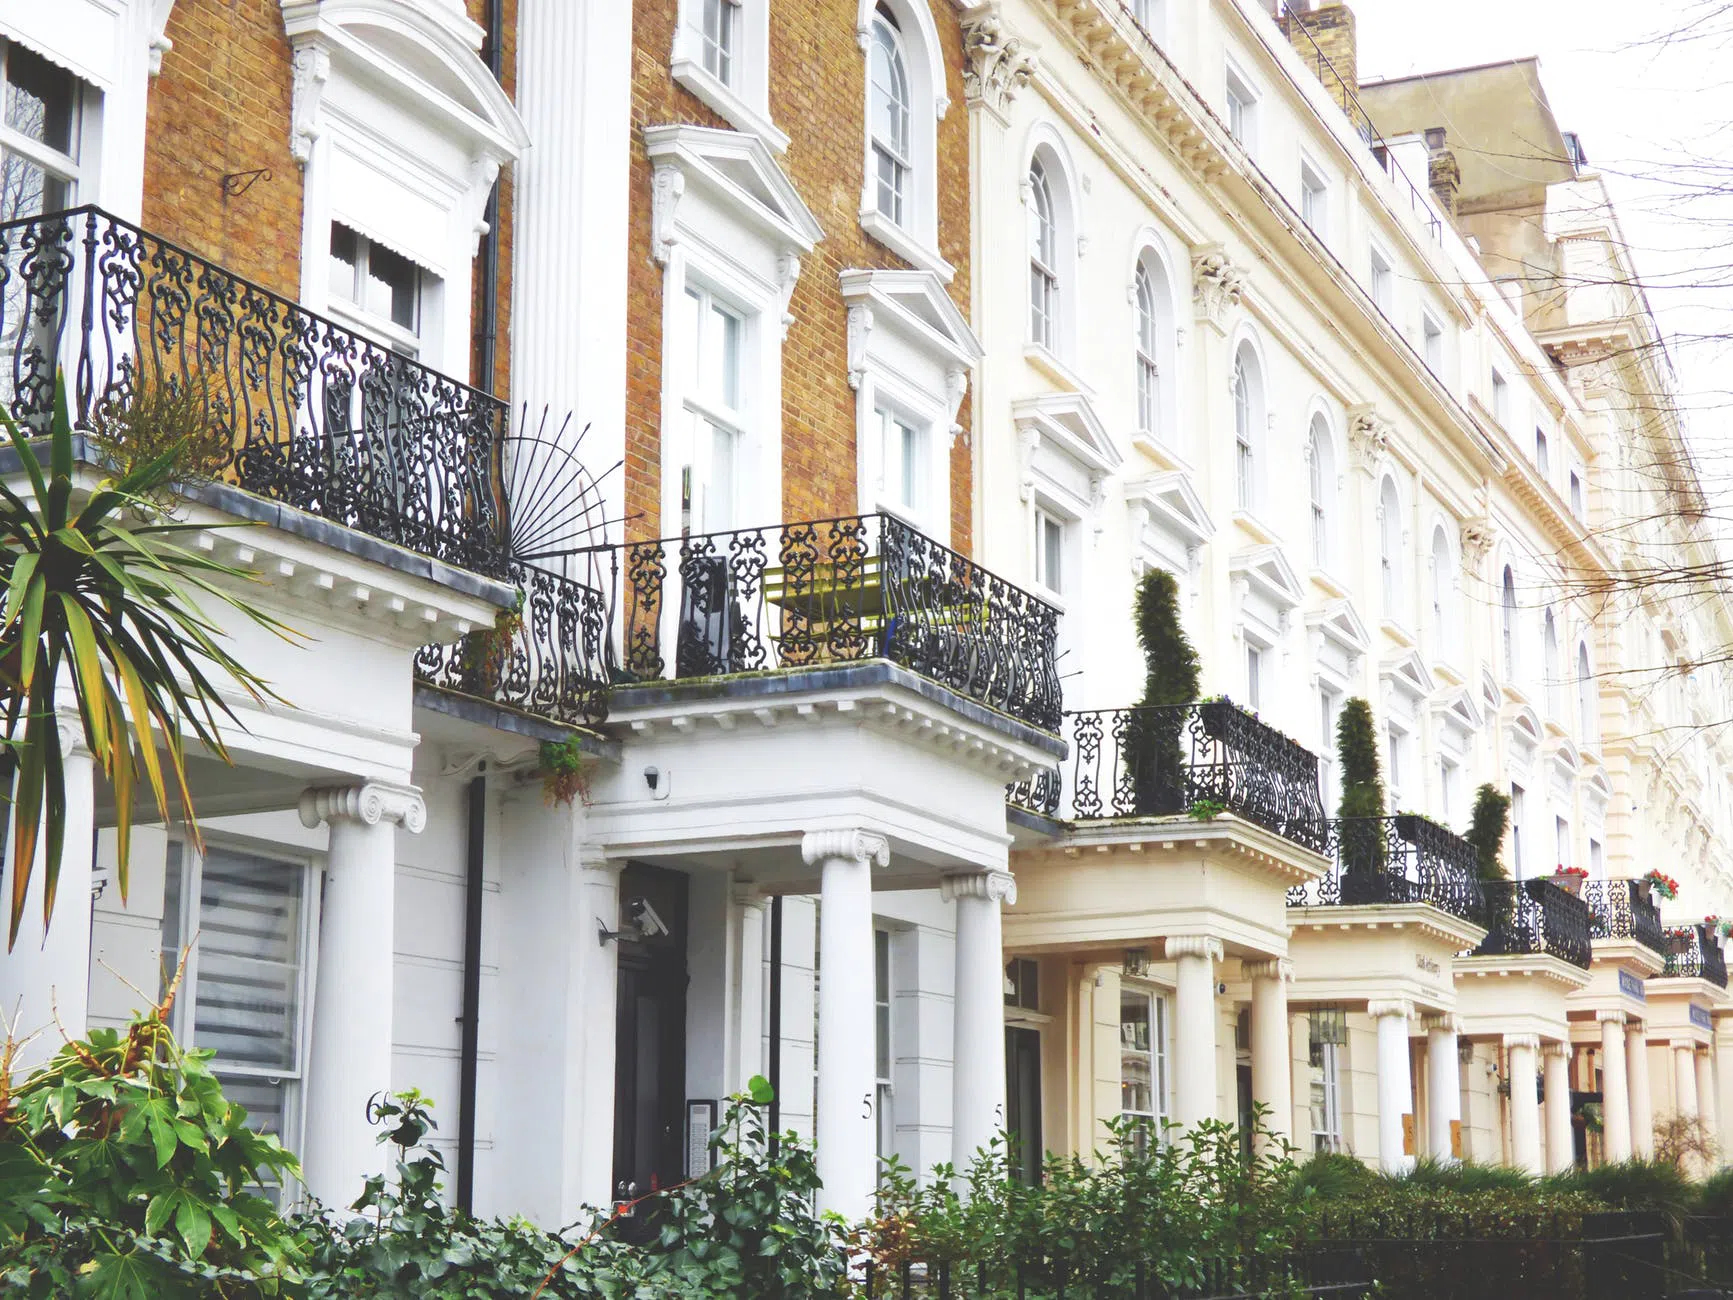 5 Best Neighbourhoods to Stay in London